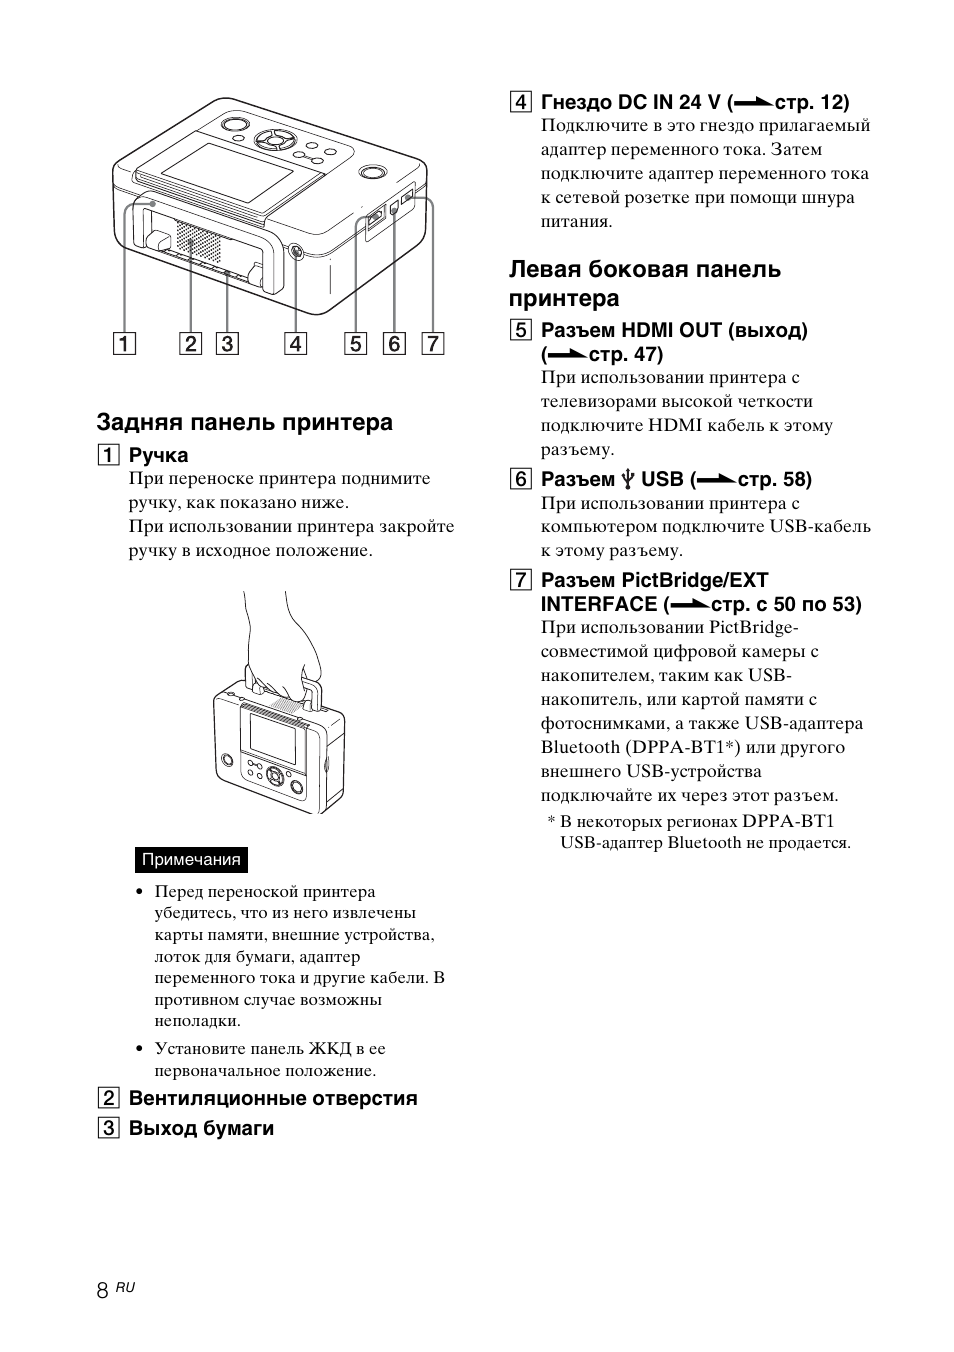 Задняя панель принтера, Левая боковая панель принтера | Инструкция по эксплуатации Sony DPP-FP97 | Страница 8 / 92